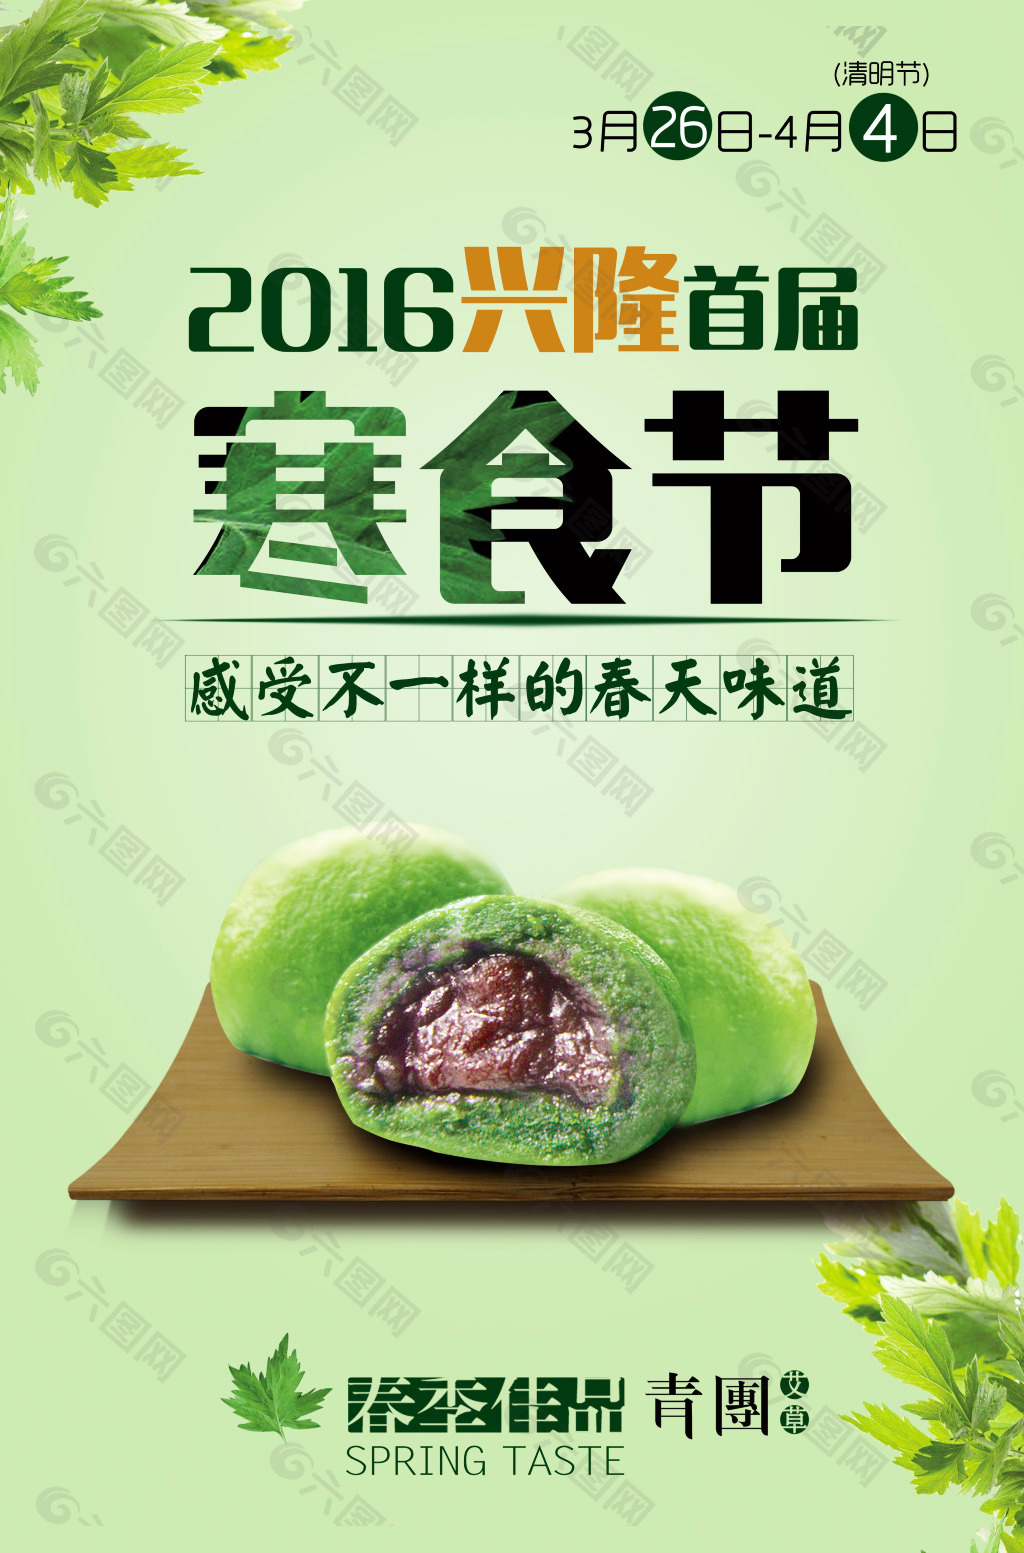 青团海报 2016寒食节